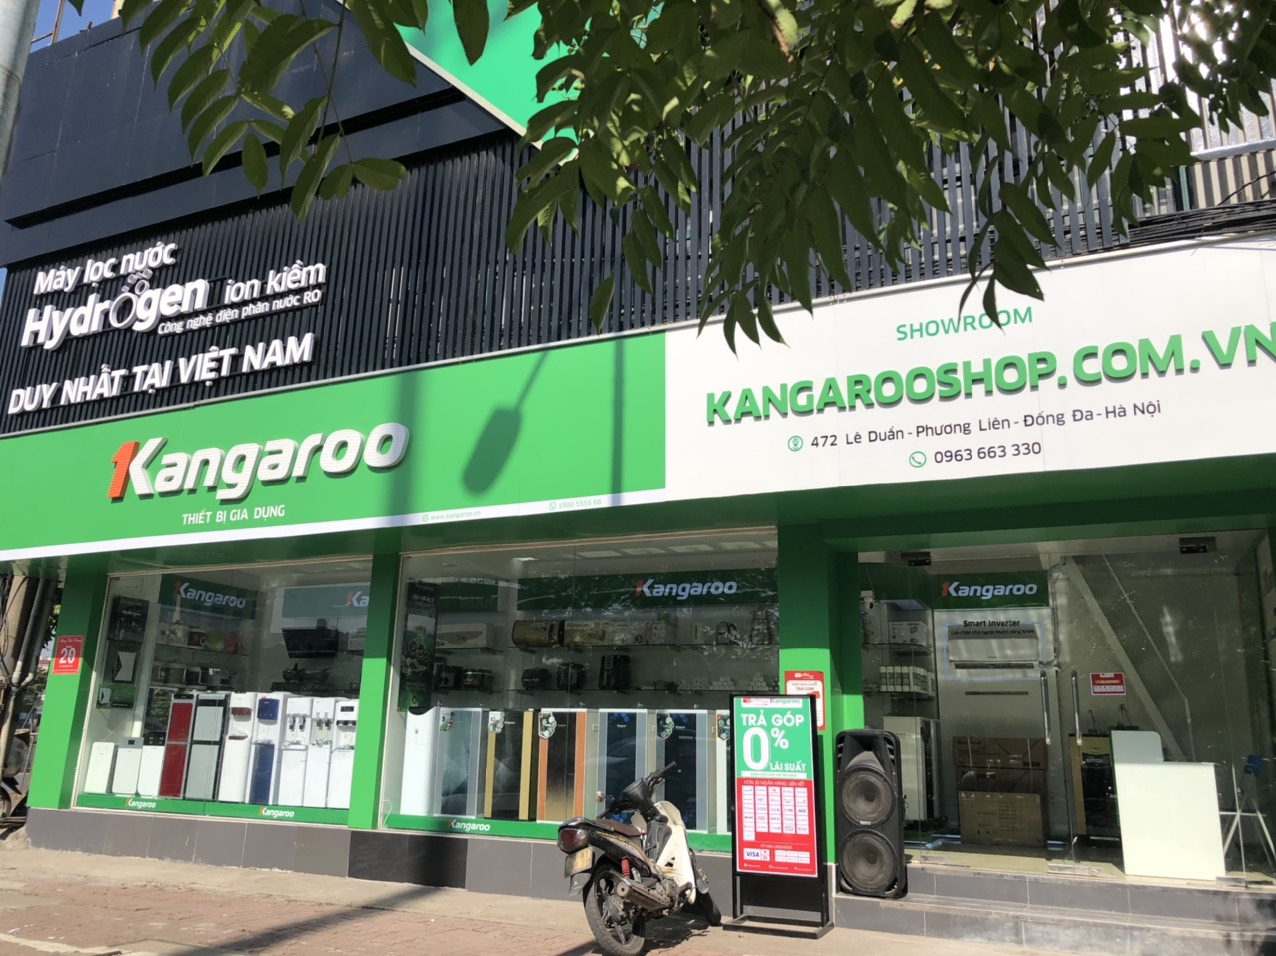 Kangaroo Shop – Địa chỉ mua hàng trực tiếp tại Hà Nội